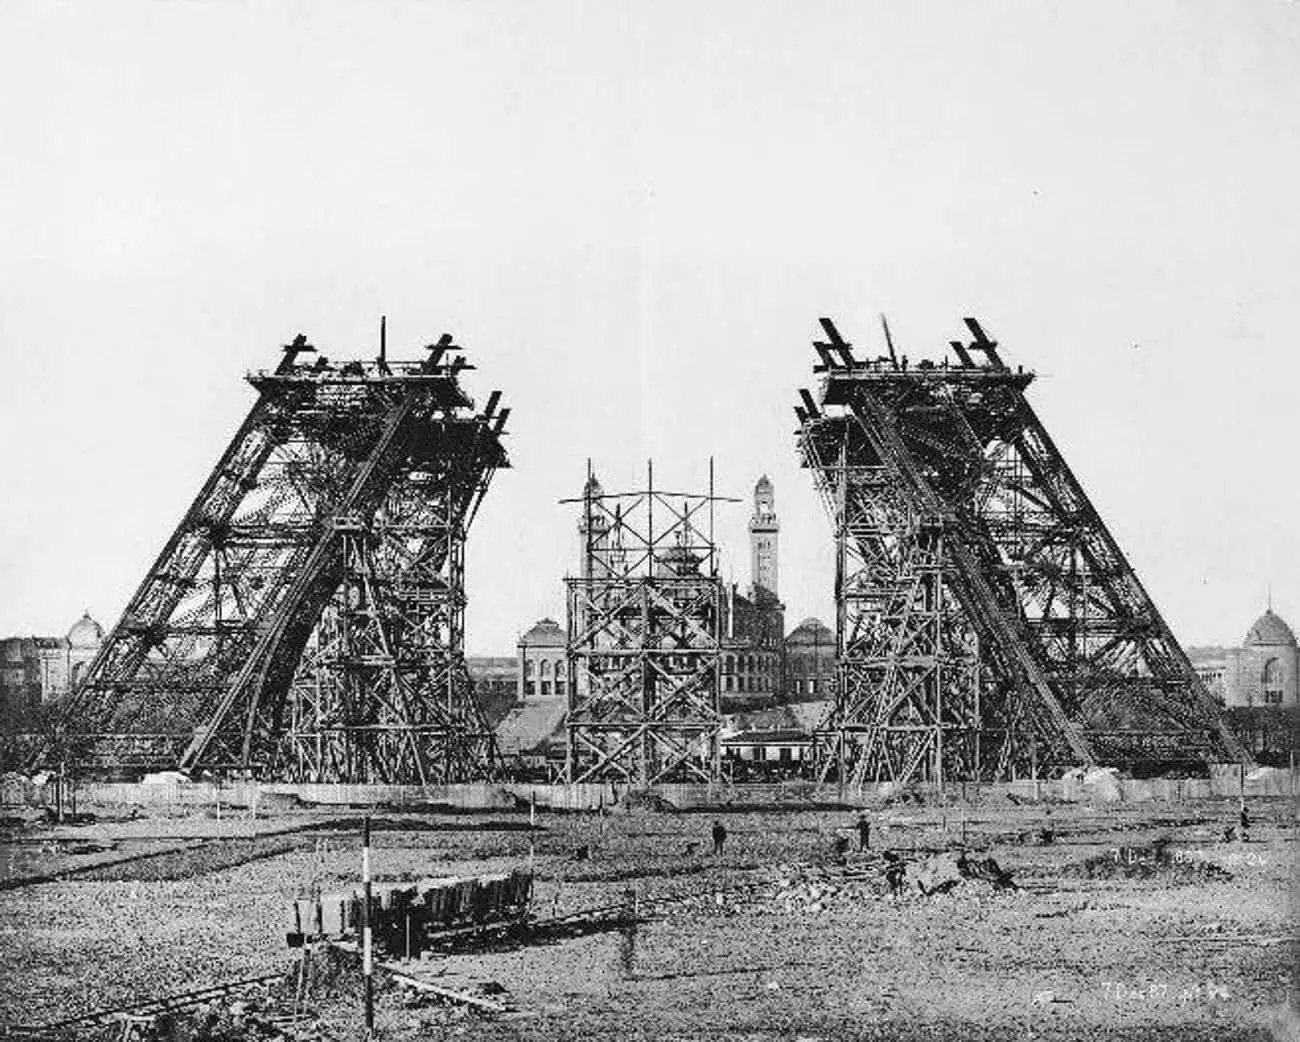 Eiffel Tower under construction